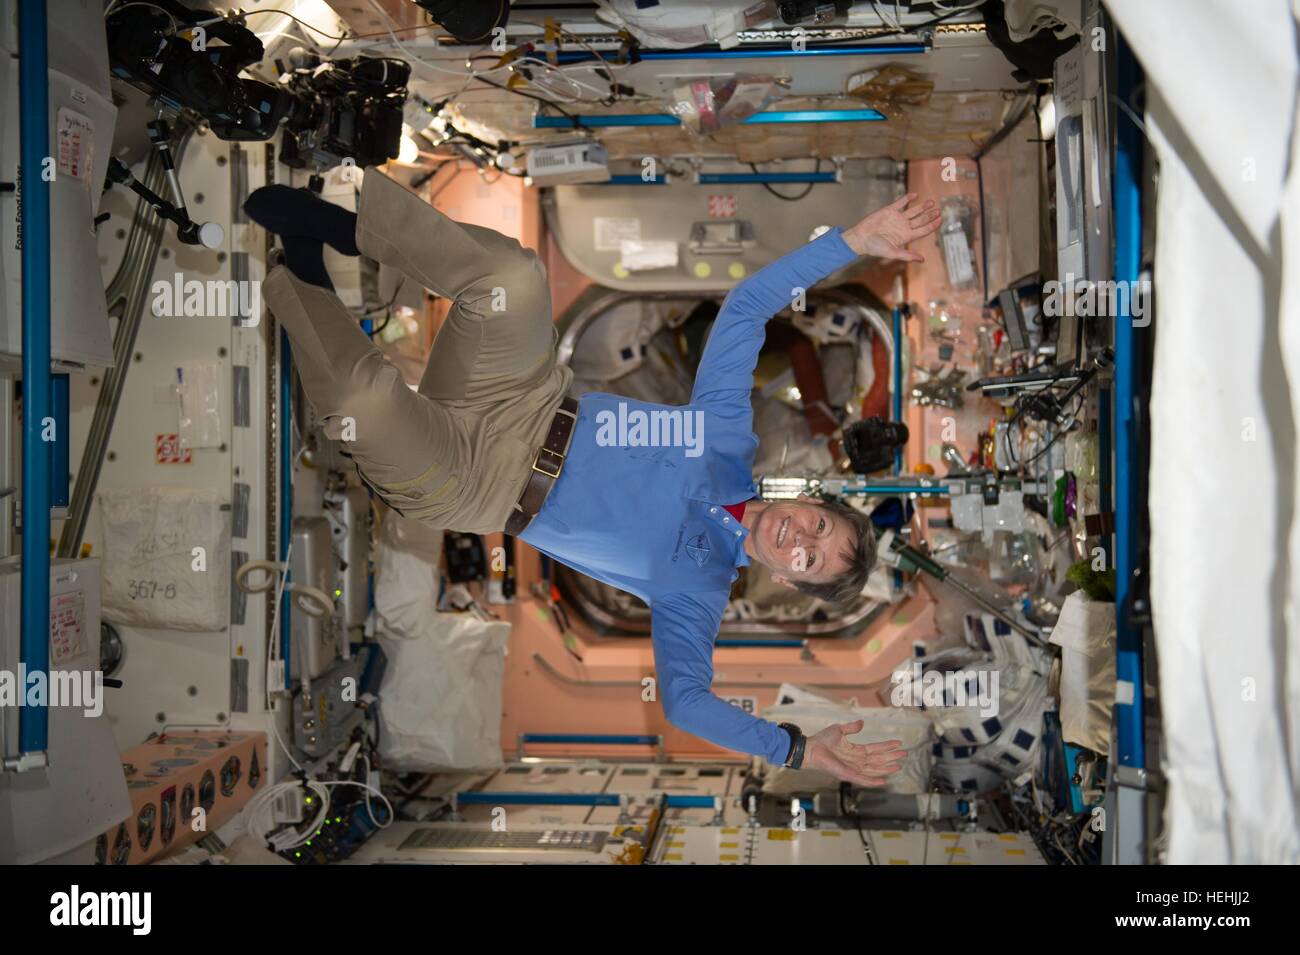 La NASA Expedition 51 astronauta Peggy Whitson galleggiante attraverso la stazione spaziale internazionale il modulo unità Novembre 28, 2016 in orbita intorno alla terra. Foto Stock